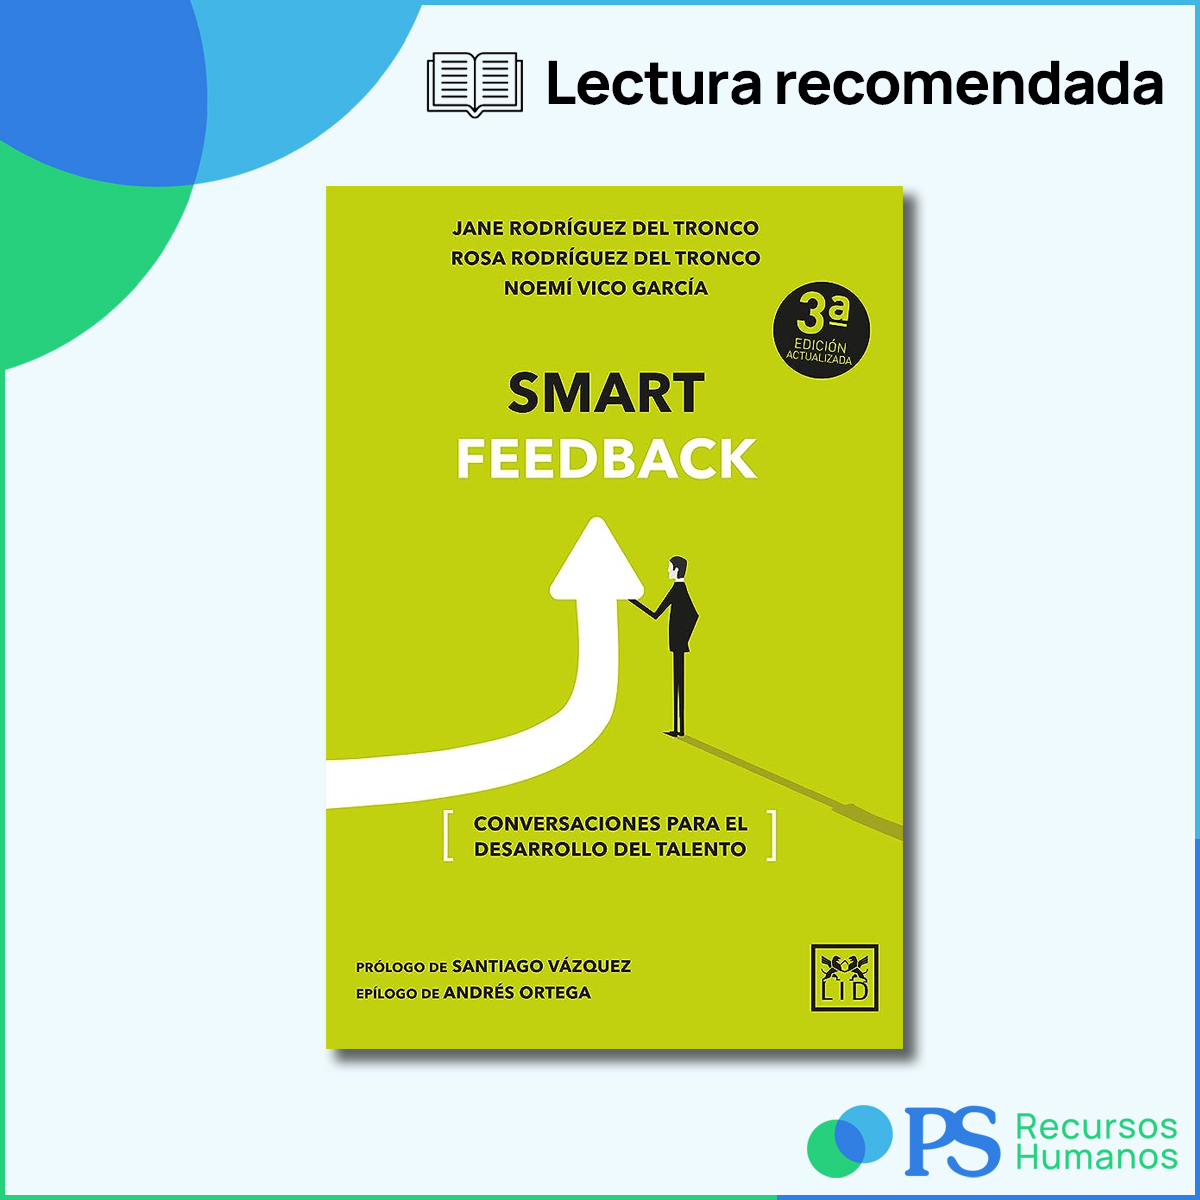 #SmartFeedback es un libro práctico sobre una herramienta muy poderosa en las empresas, pero que escasea o es mal ejecutada en muchas ocasiones. Una lectura interesante y útil en lo laboral/personal. ¡Por eso es nuestra #RecomendaciónExperta del mes! 😊
@_TIRURIRU_ #Libros #RRHH